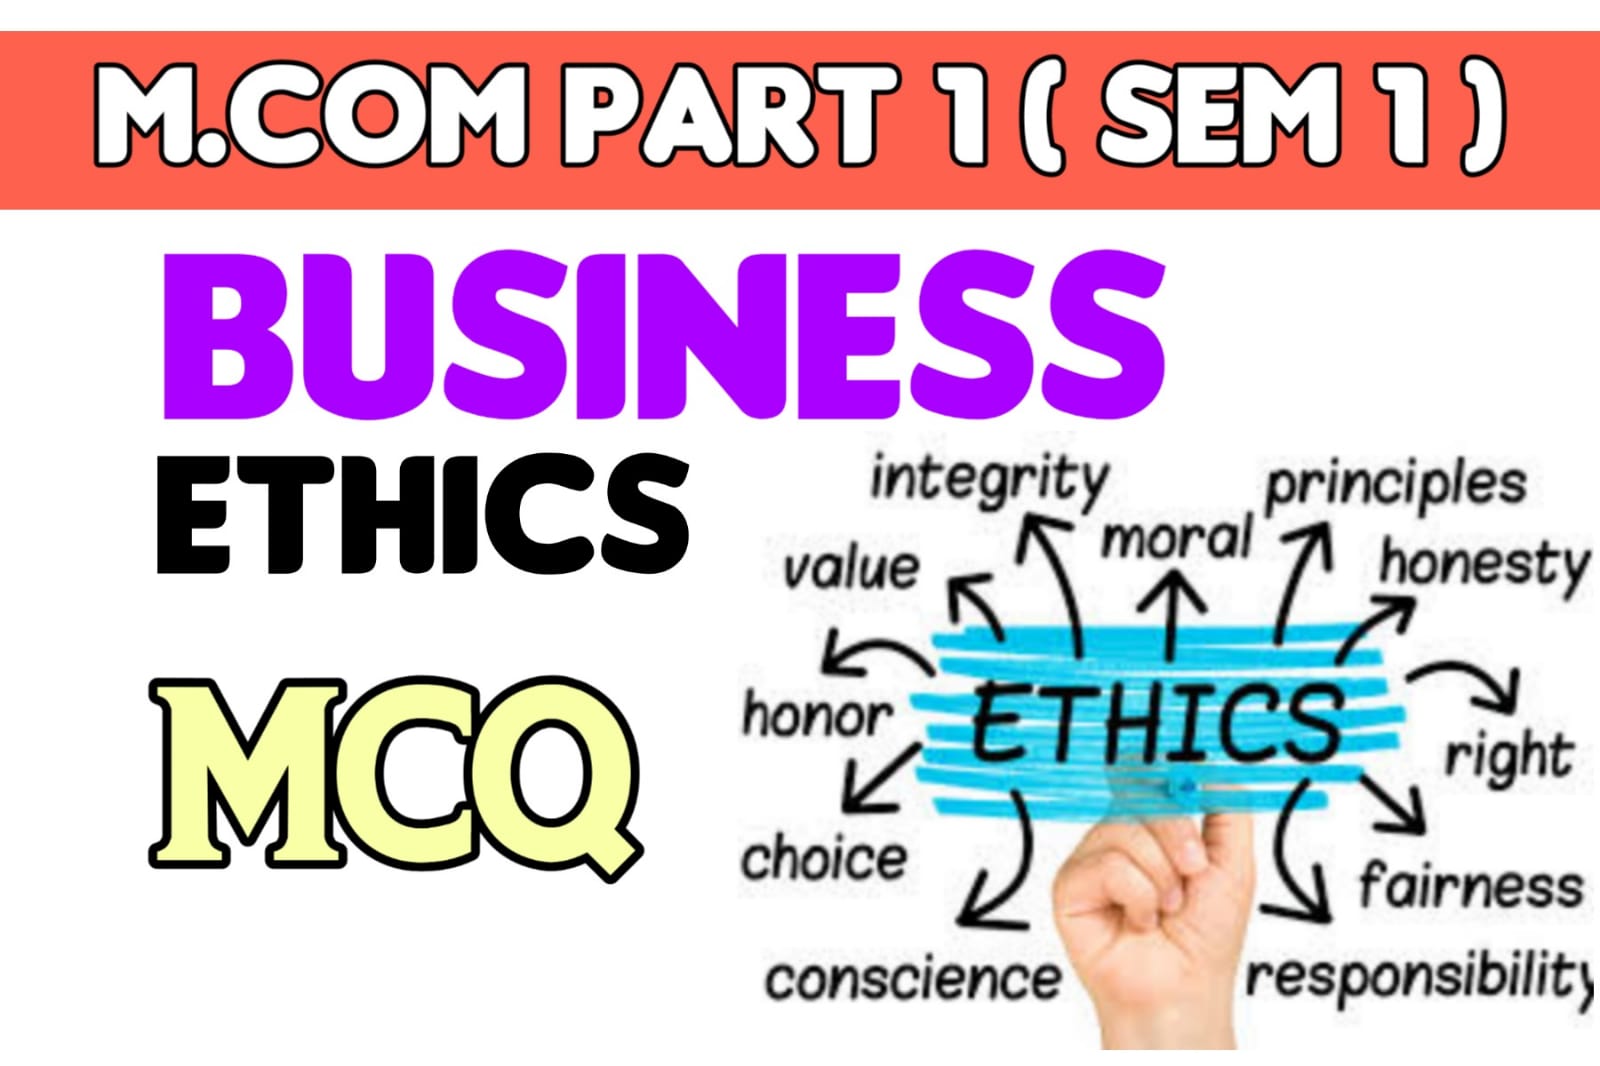 M.com Part 1 business ethics mcqs